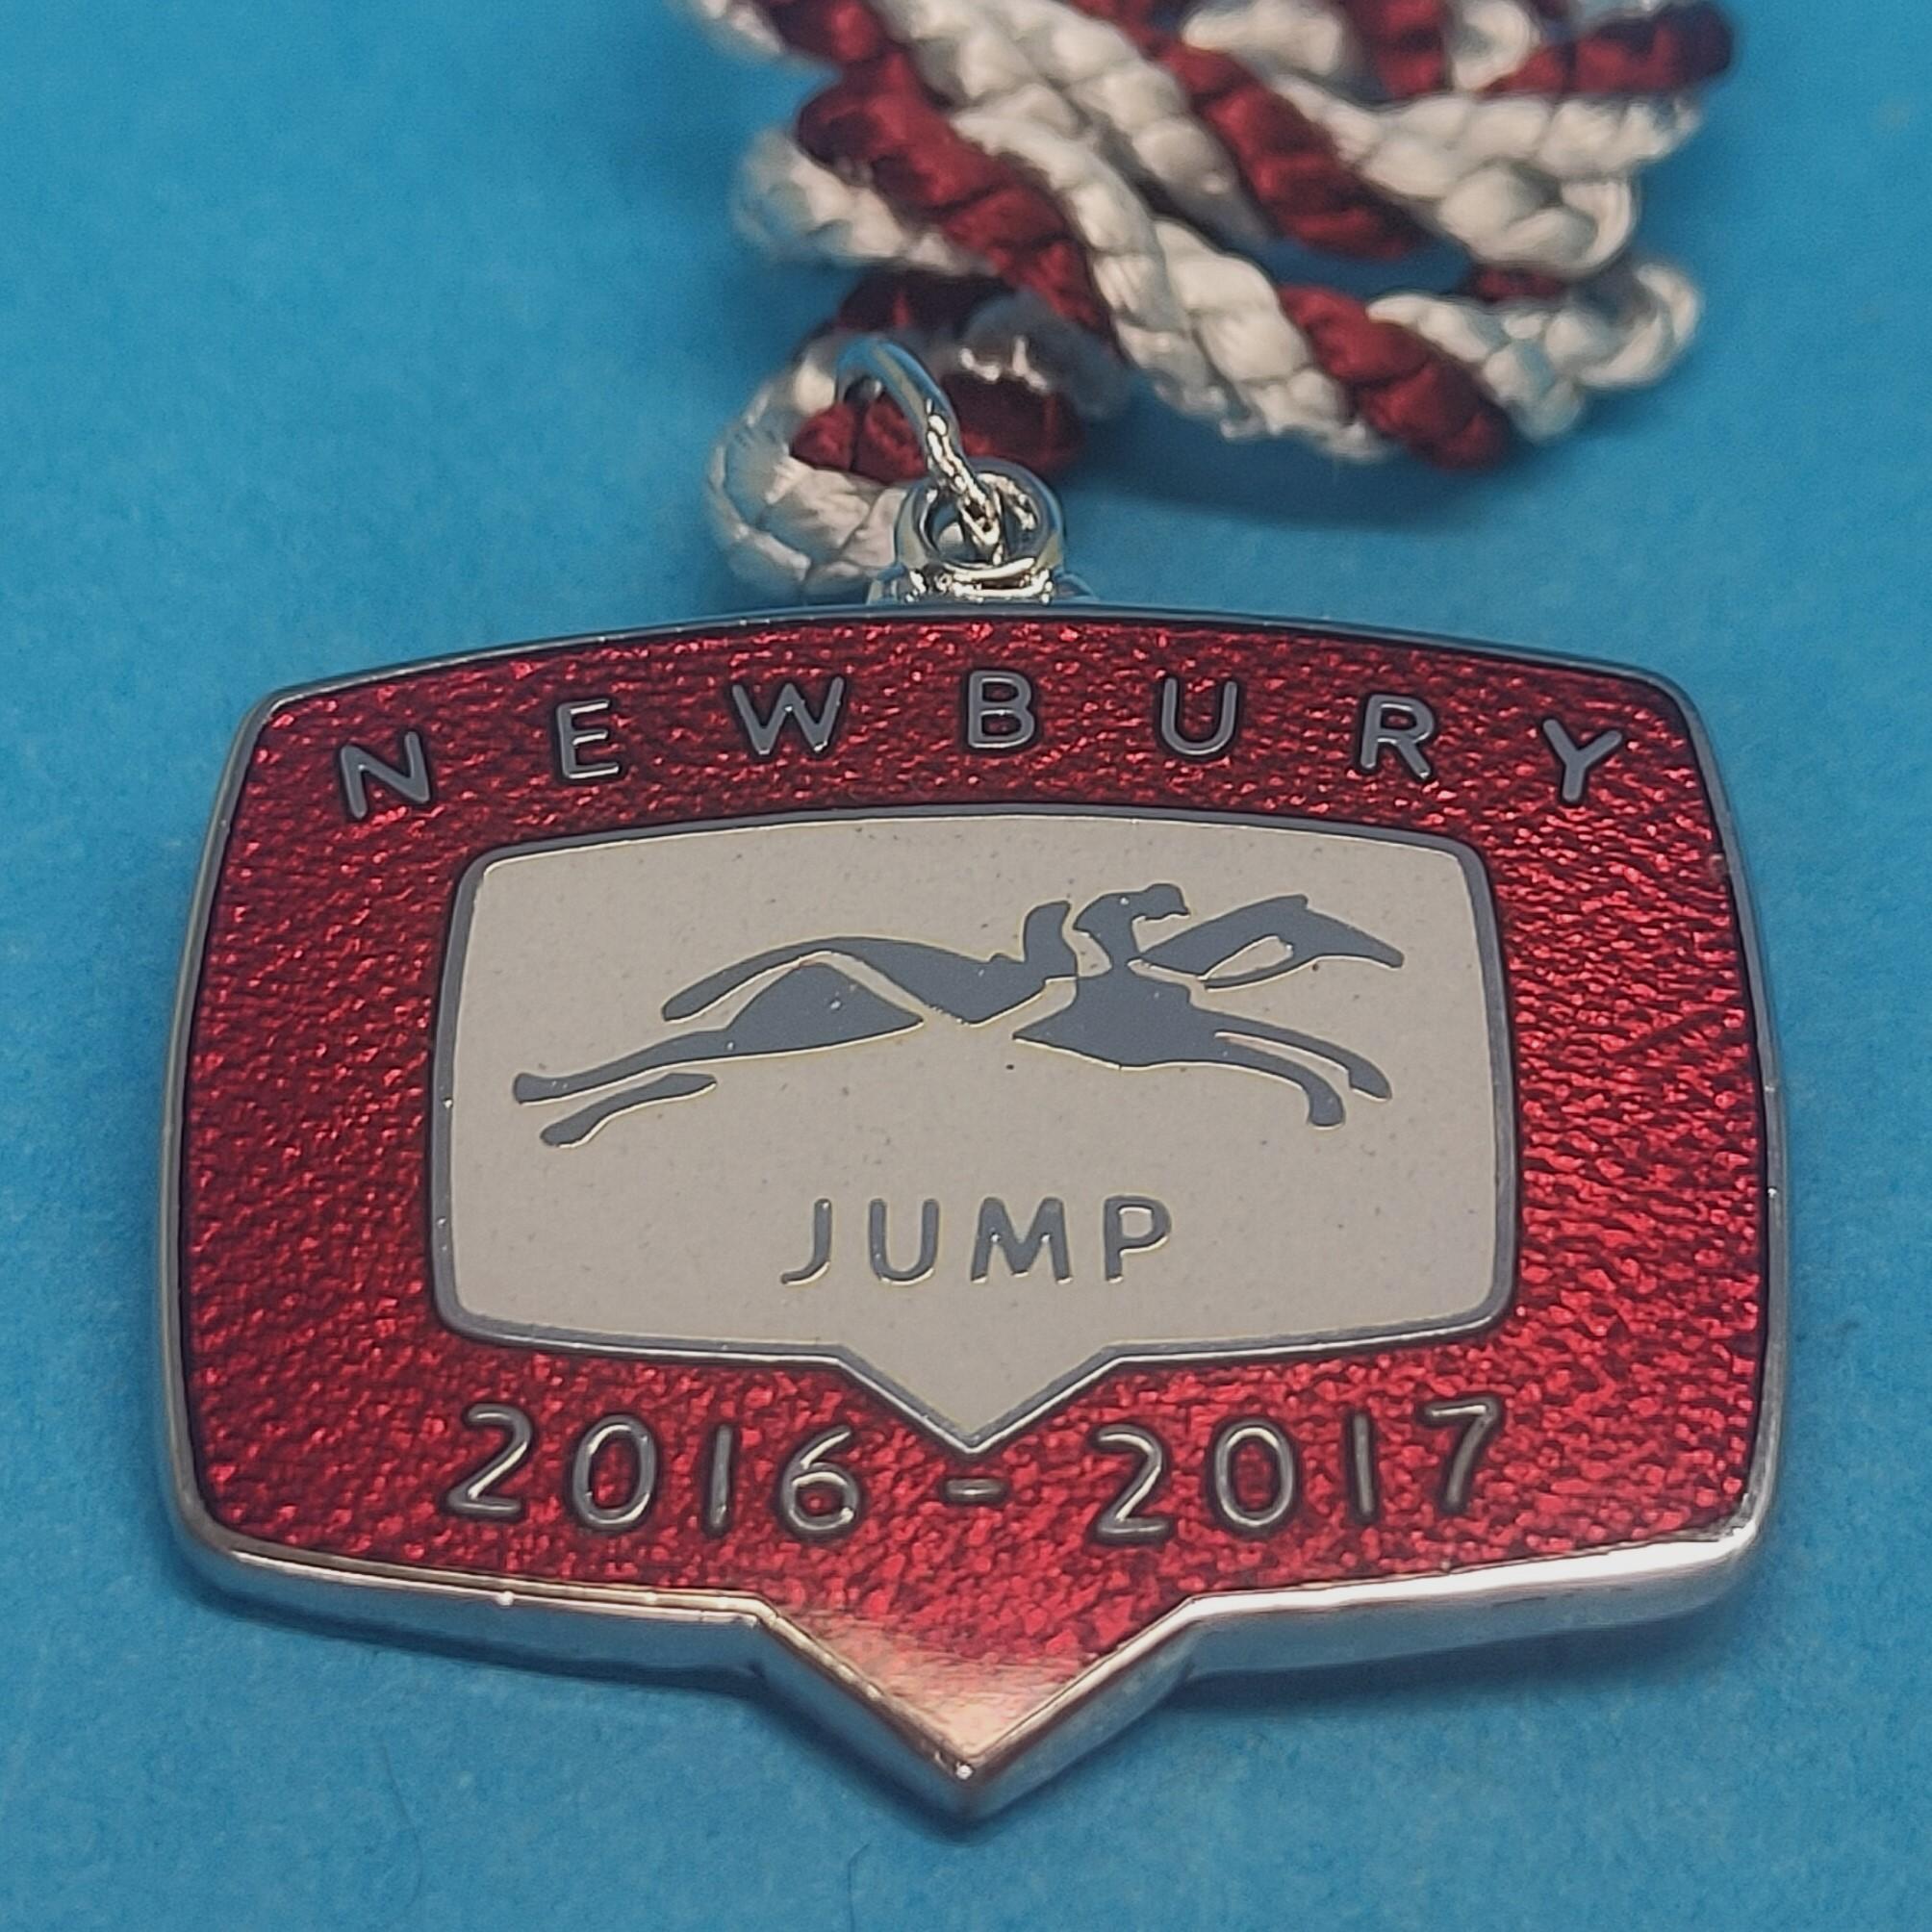 Newbury 2016 / 2017 Jumps